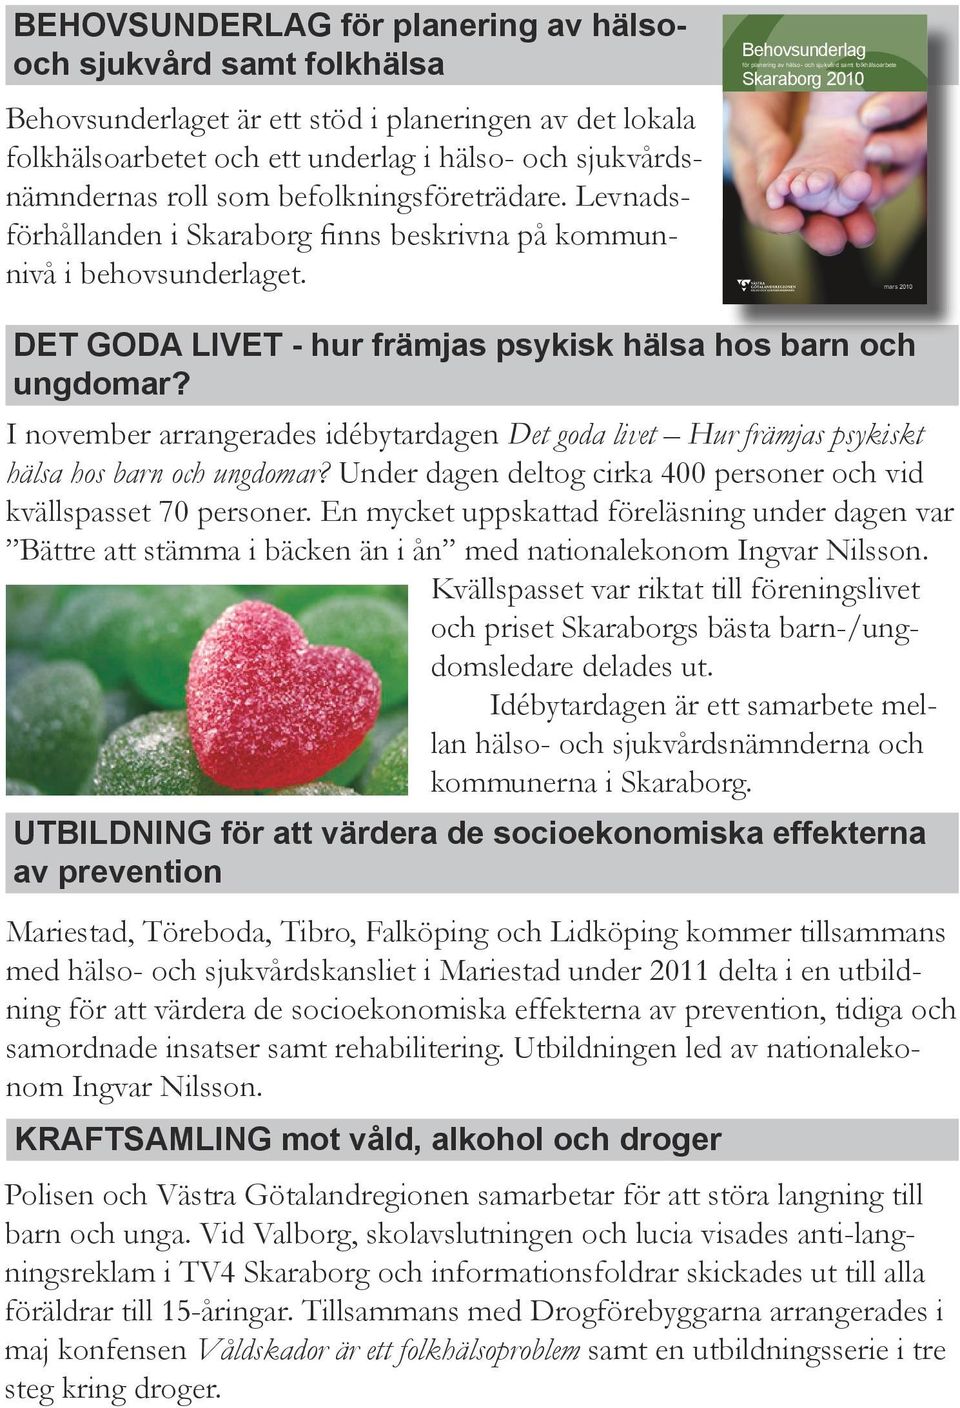 Behovsunder lag för planering av hälso- och sjukvård samt folkhälsoarbete Skaraborg 2010 mars 2010 DET GODA LIVET - hur främjas psykisk hälsa hos barn och ungdomar?